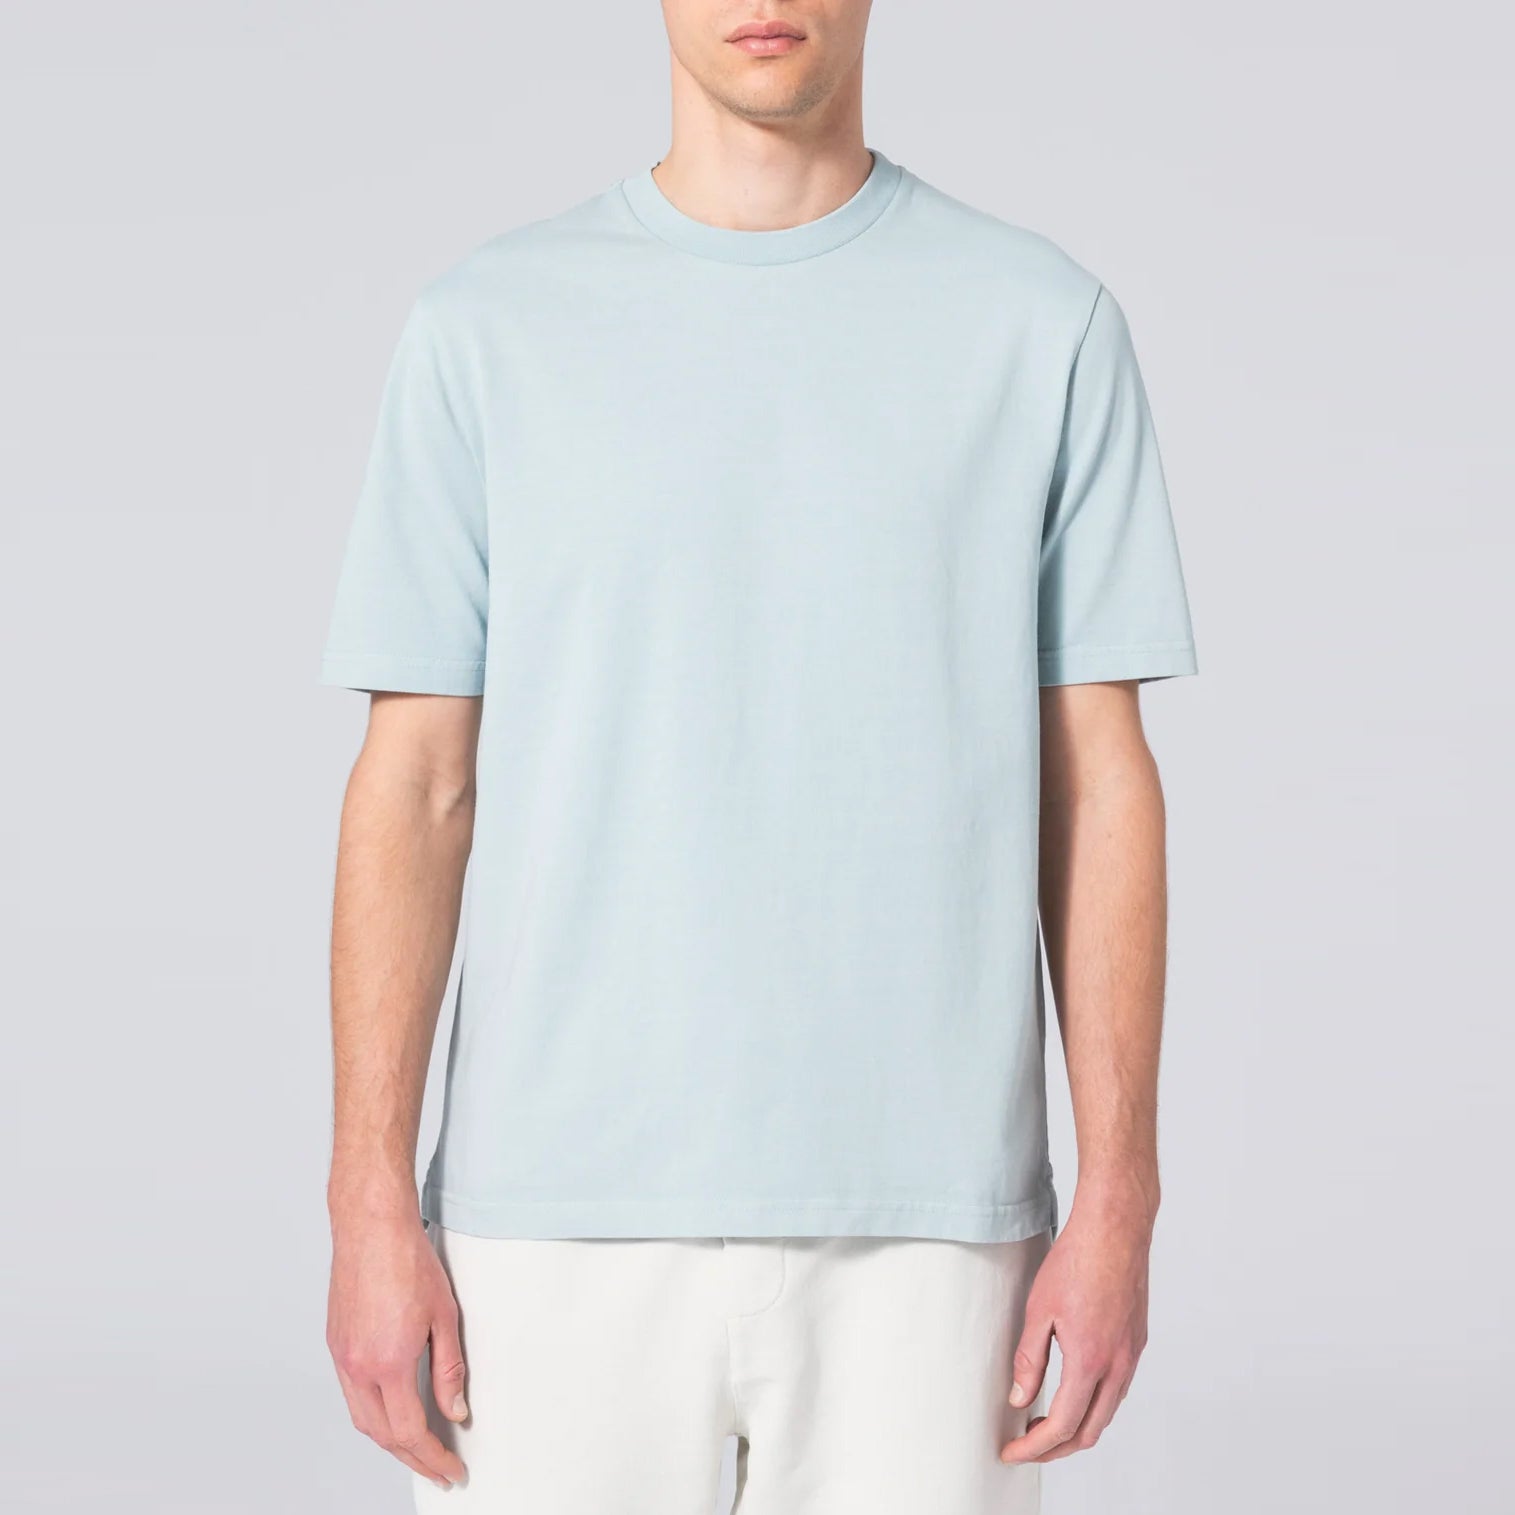 Basic T-Shirt Aqua Grey. Unfeigned